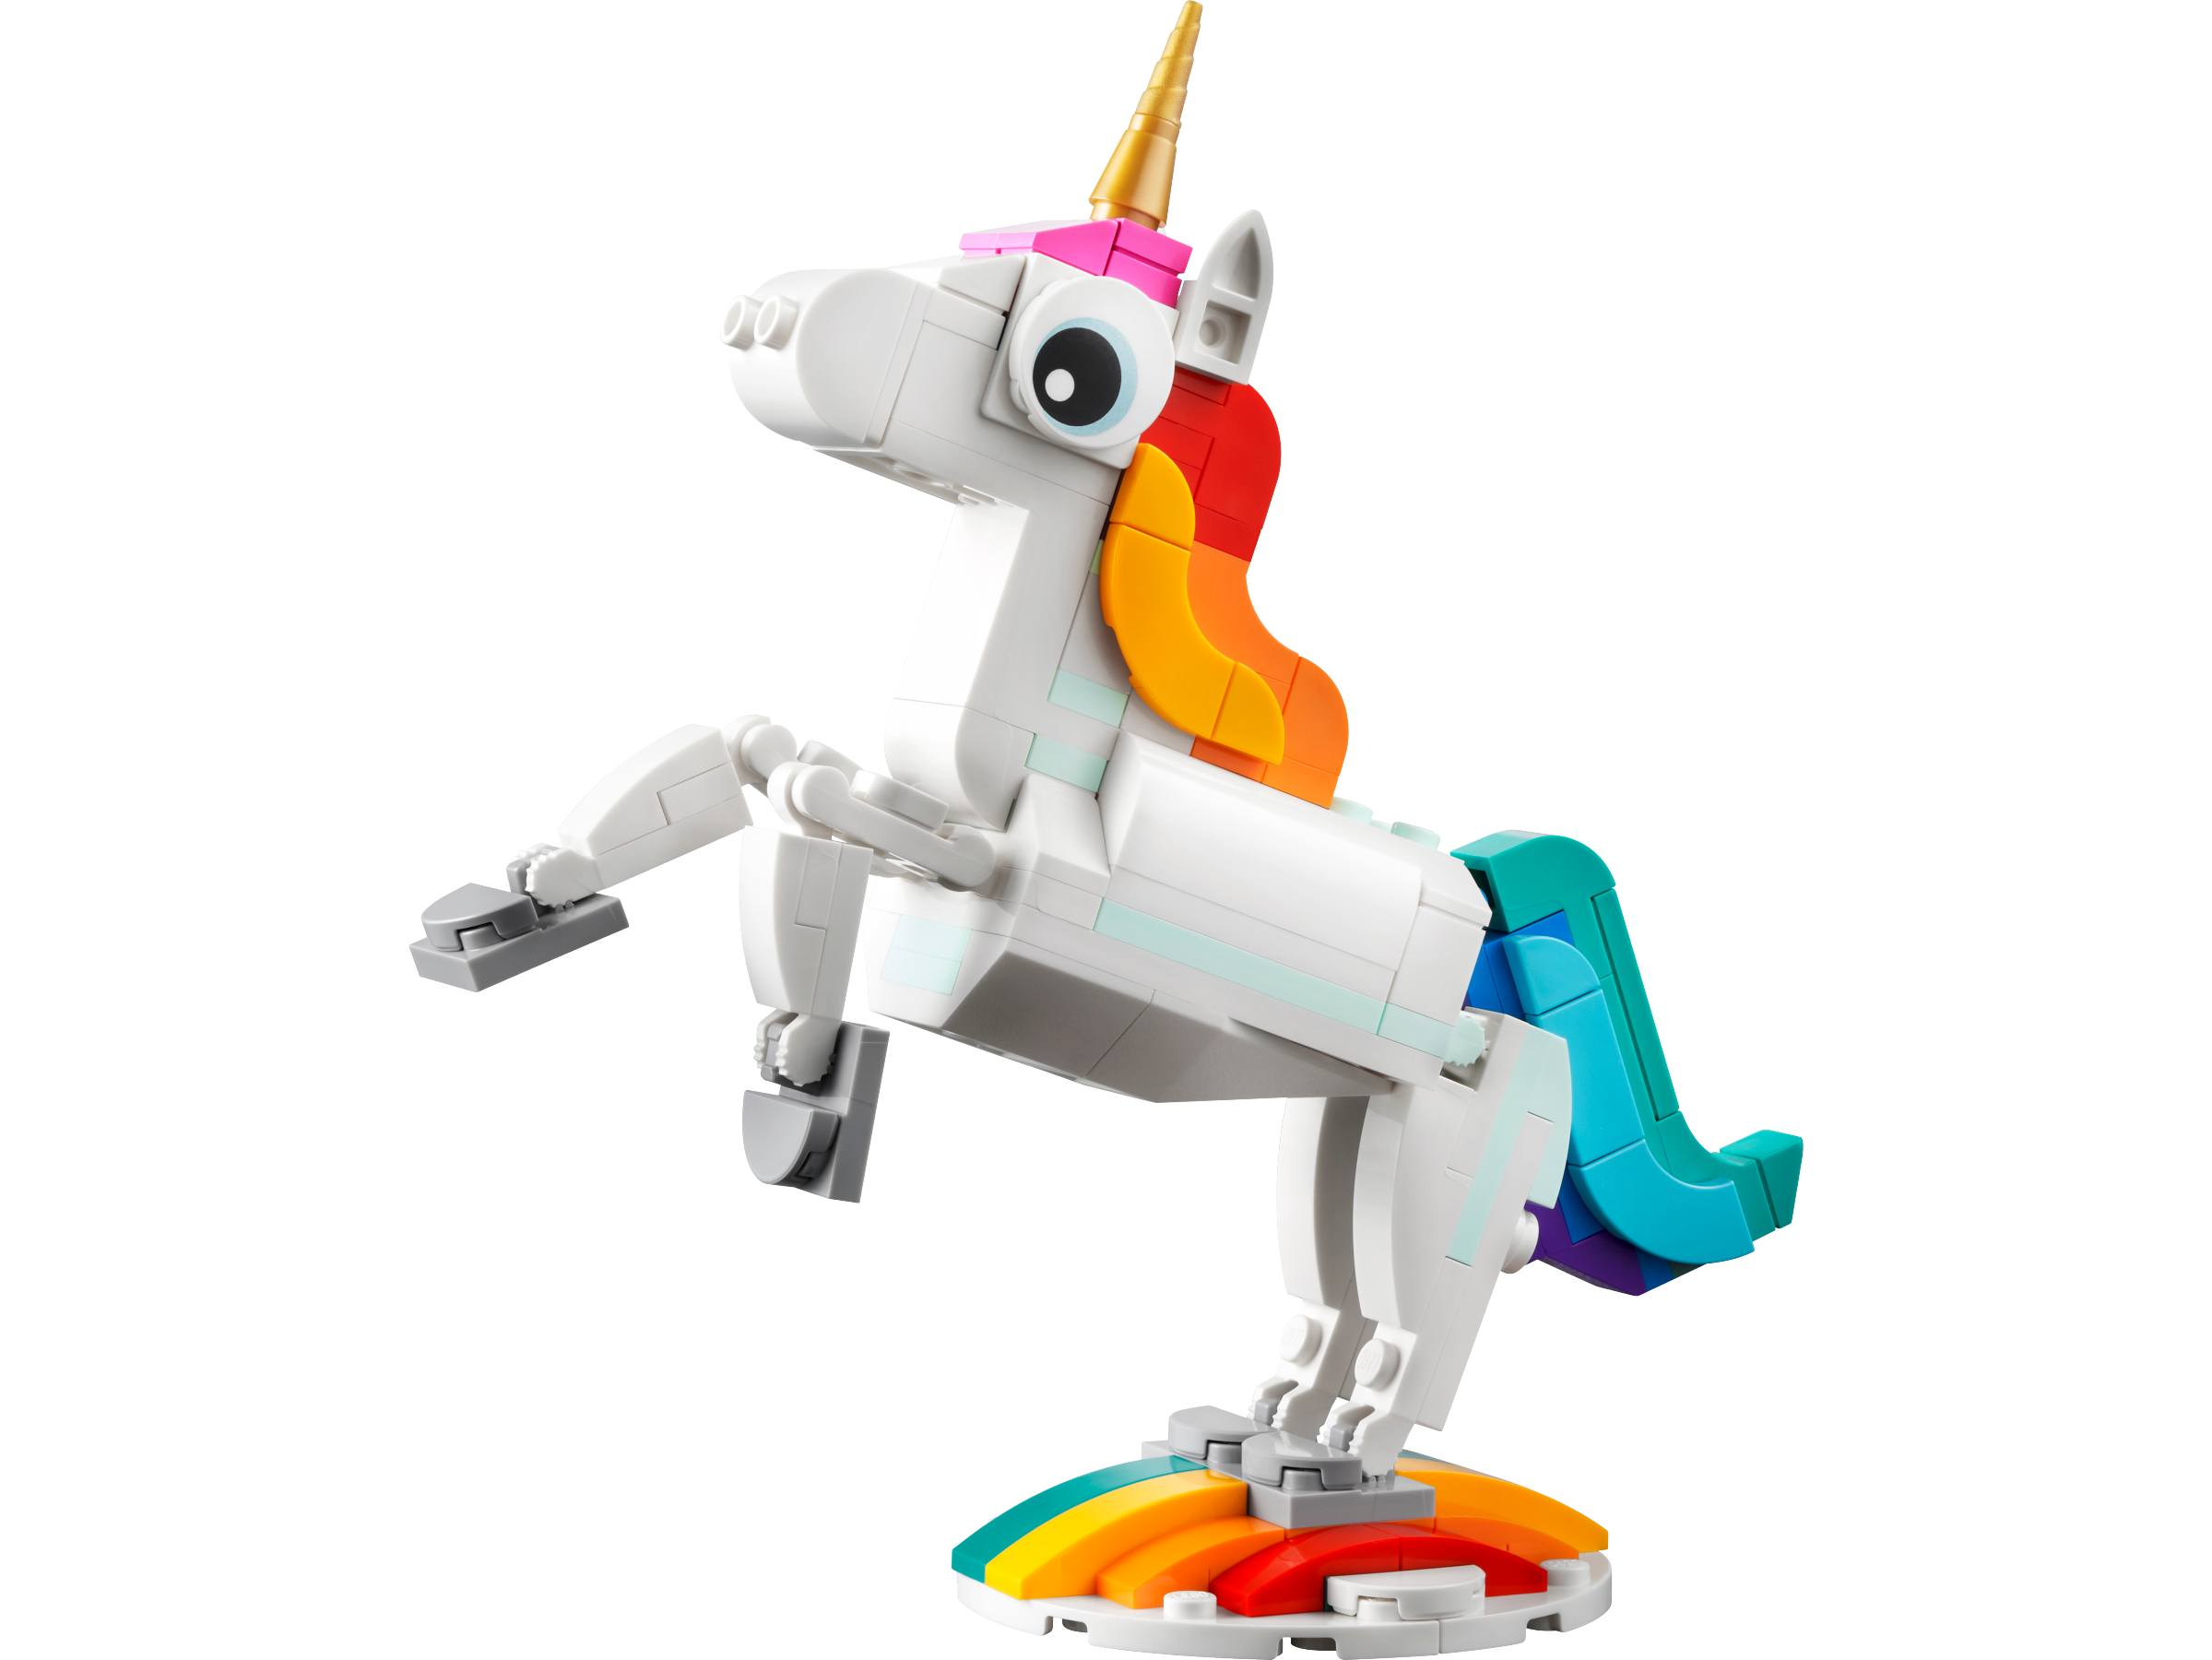 Magical Unicorn - Videos - LEGO.com for kids